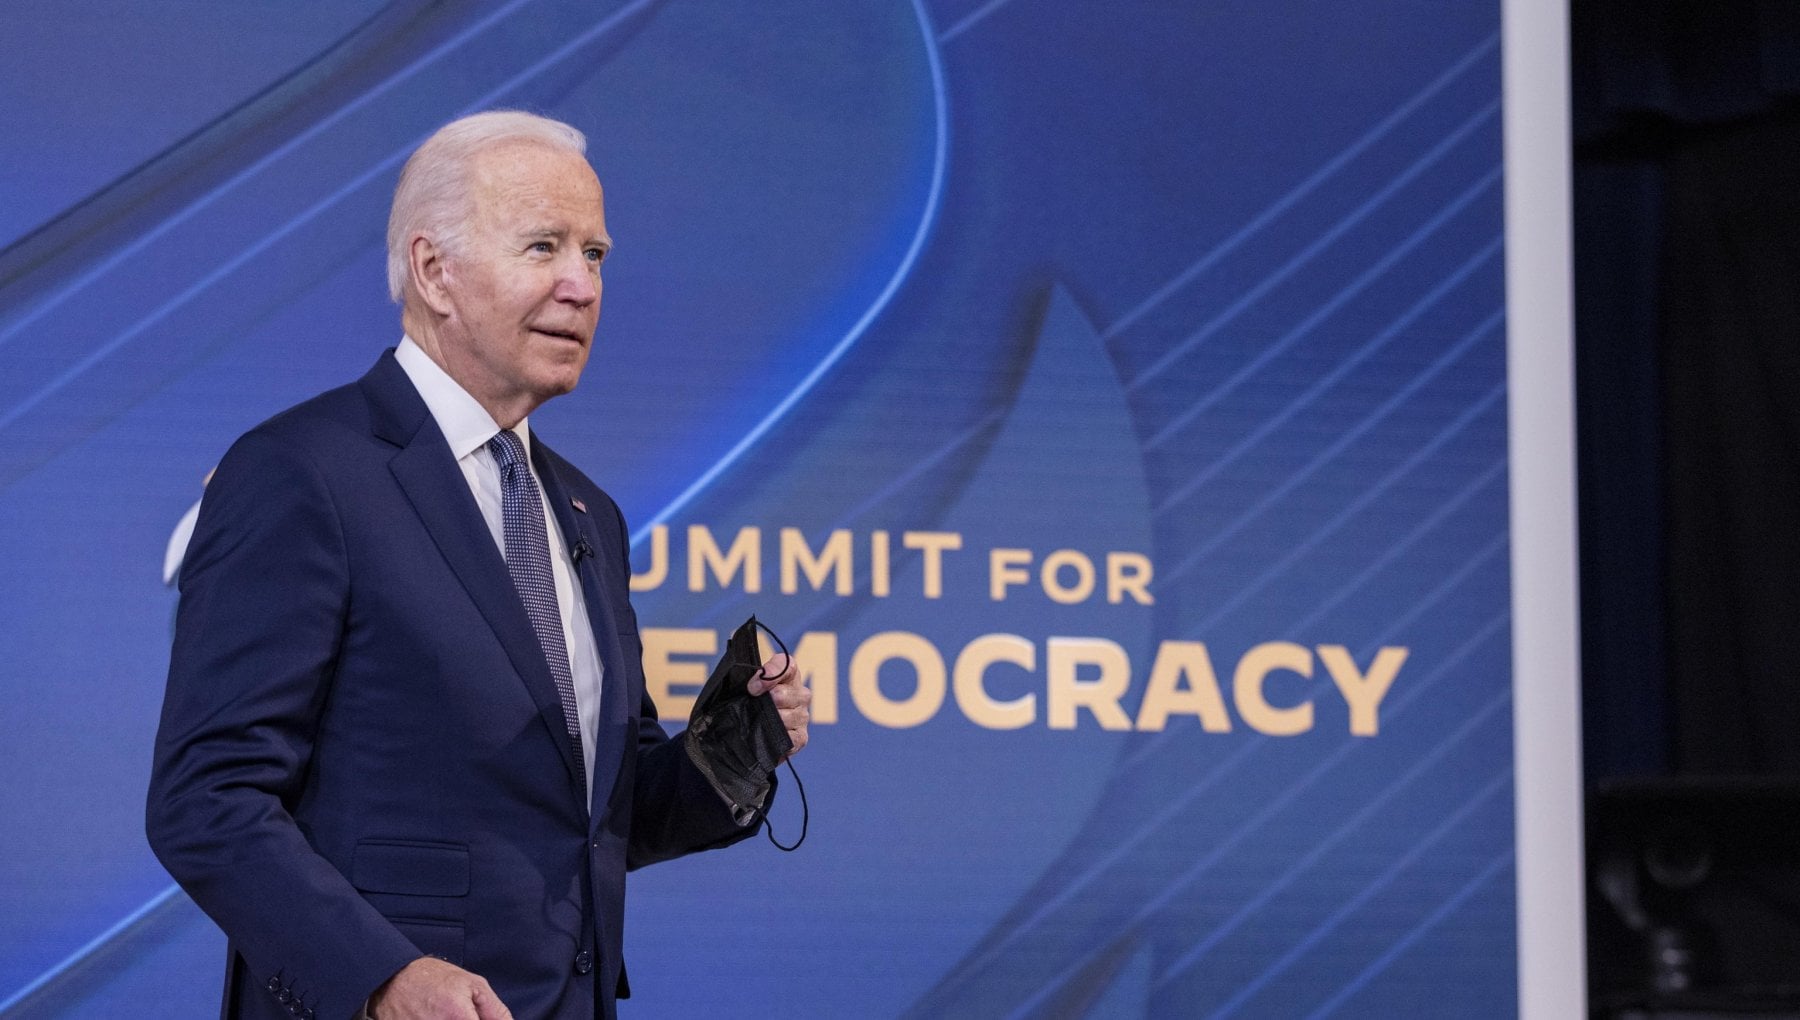 Cosa c’è dietro il vero obiettivo del vertice “democrazia” di Biden?